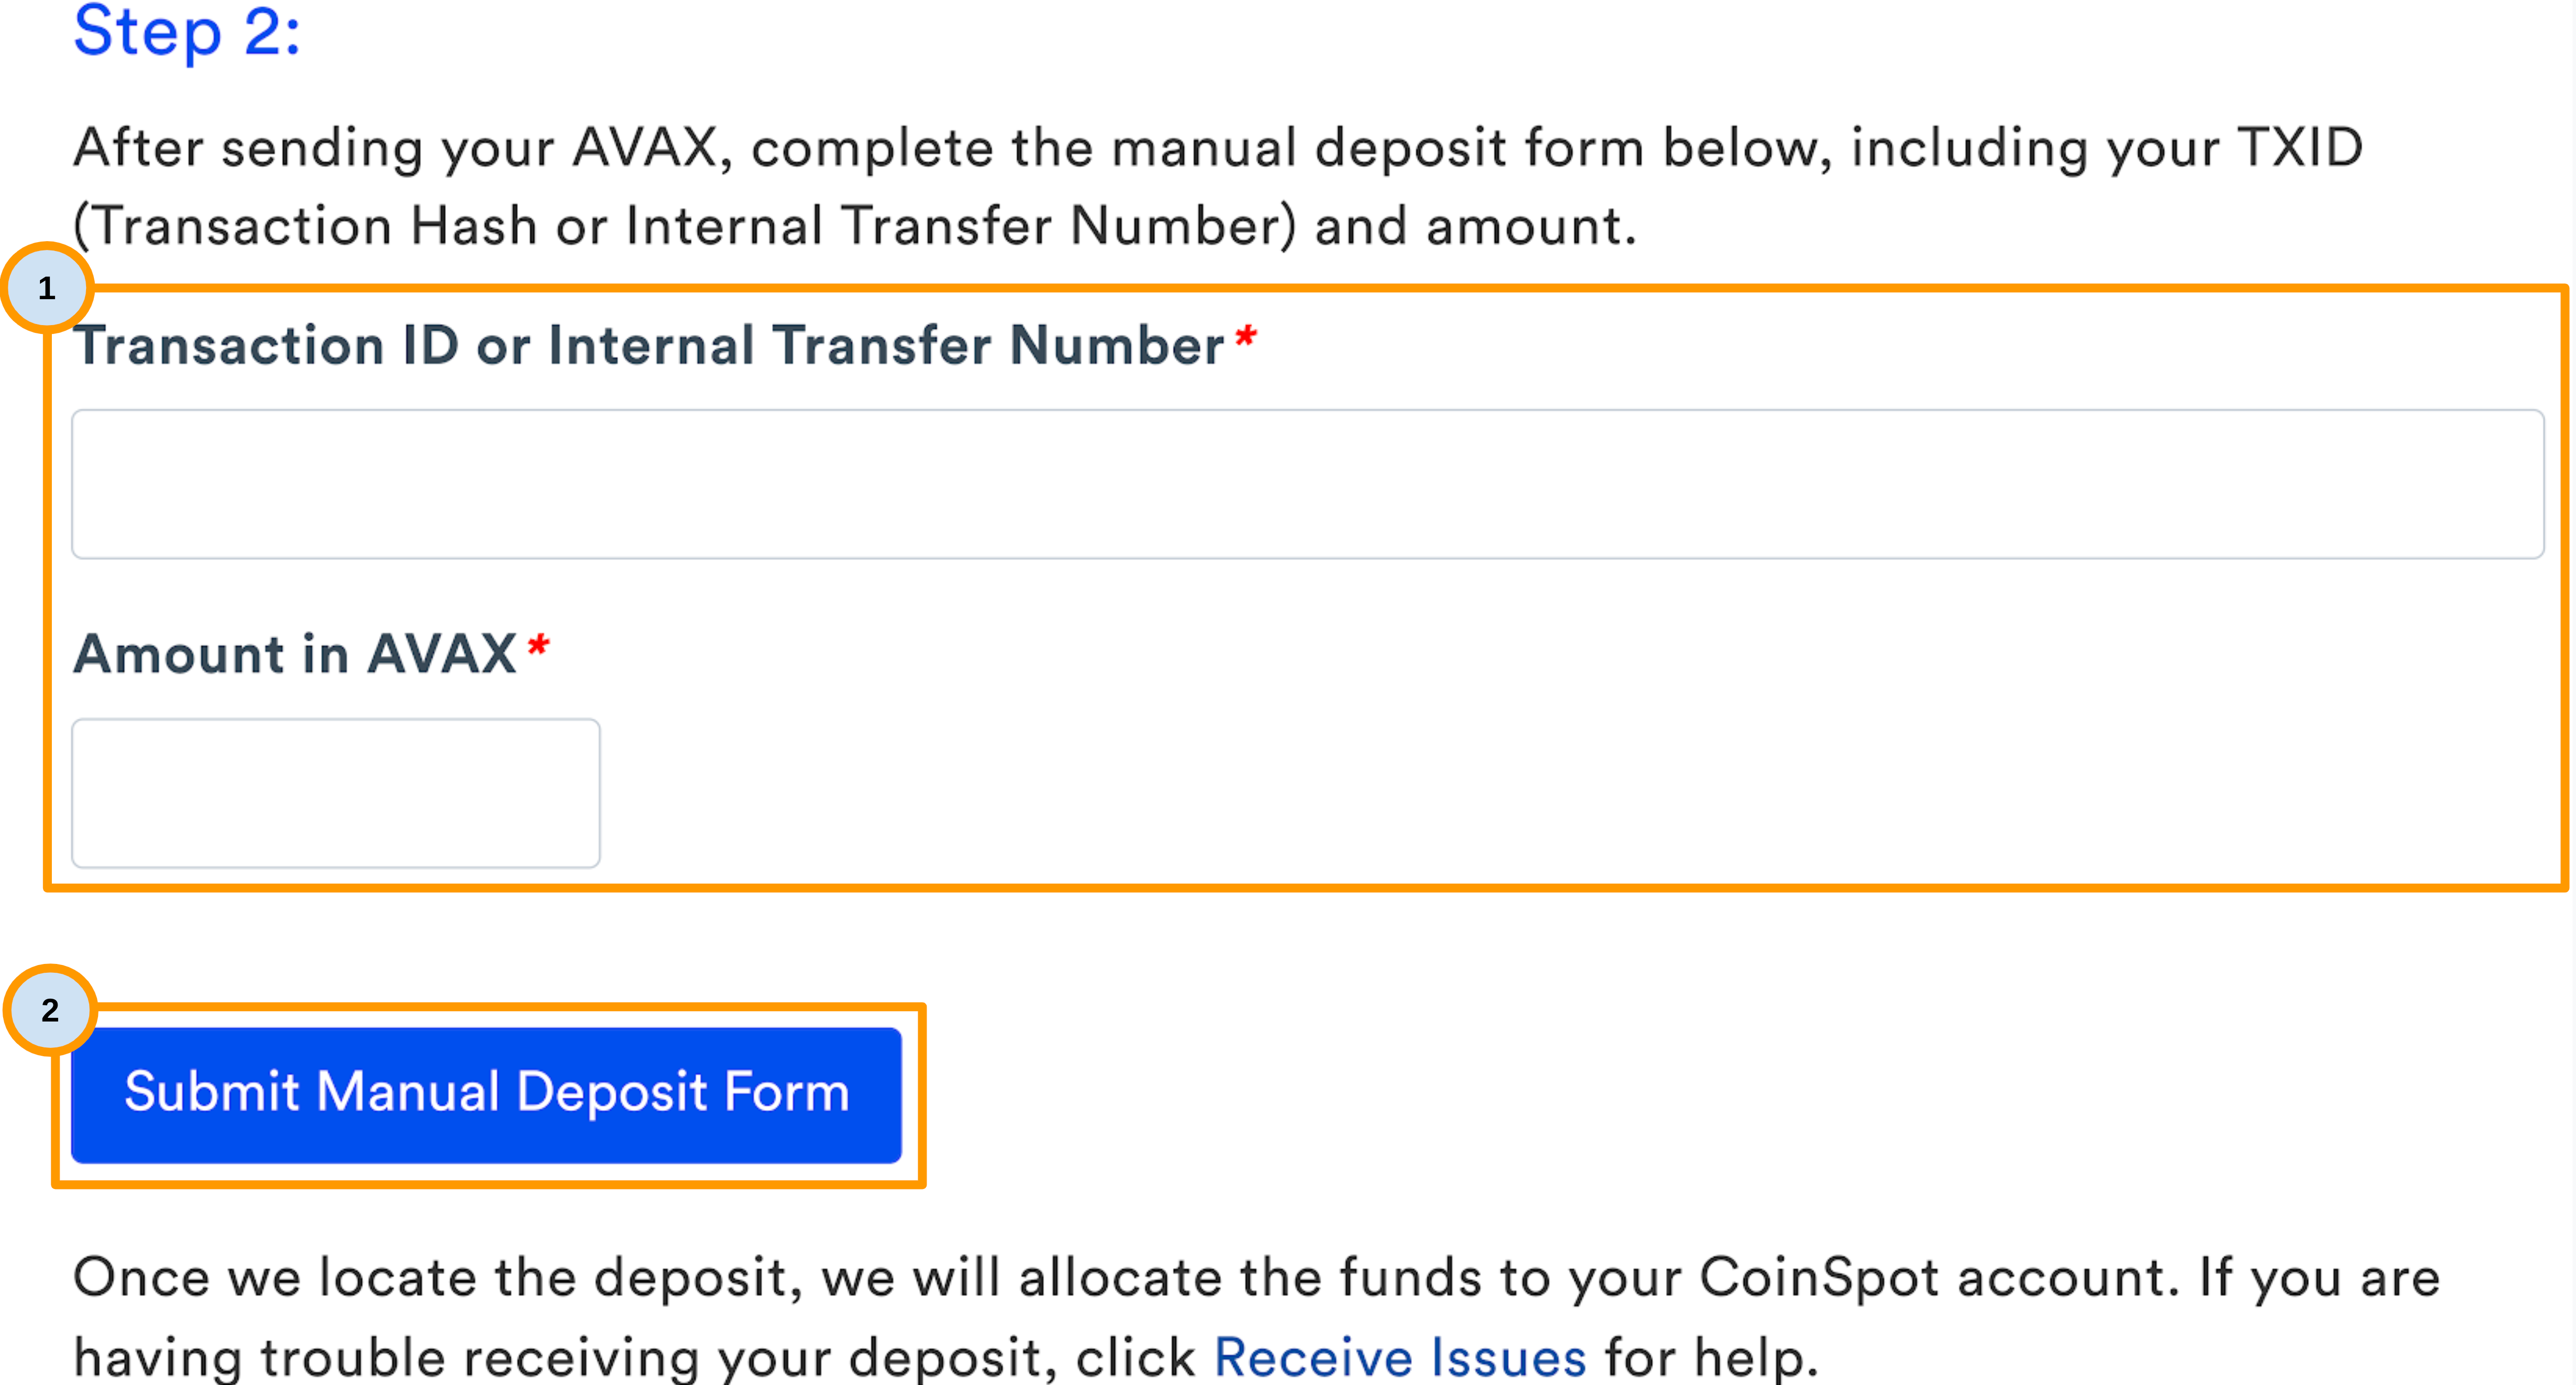 AVAX_Manual_Deposit_Form_v2.png